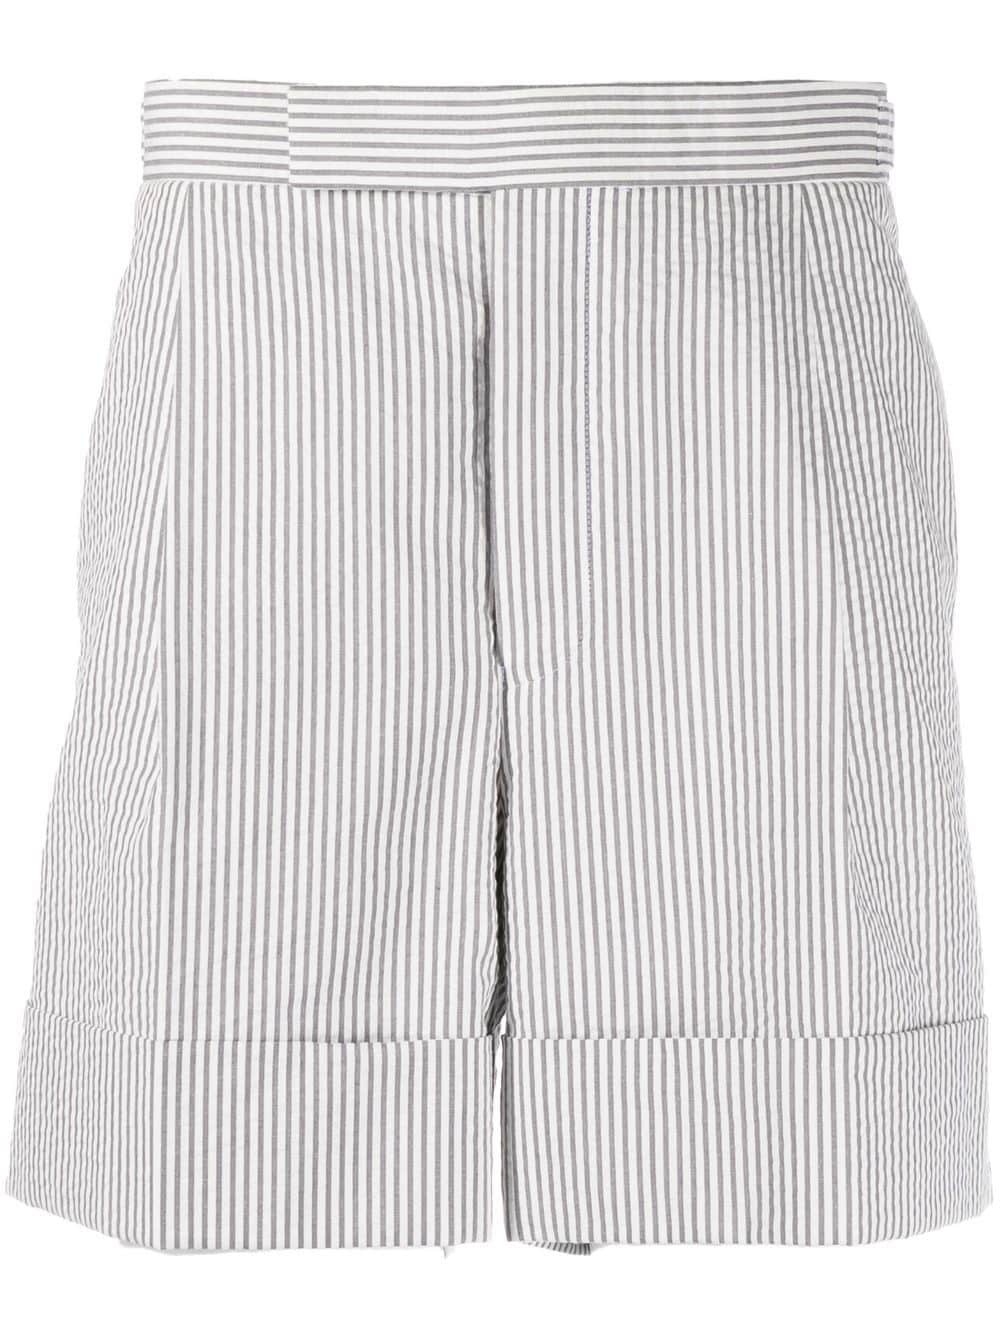 Men's Seersucker Shorts - 1